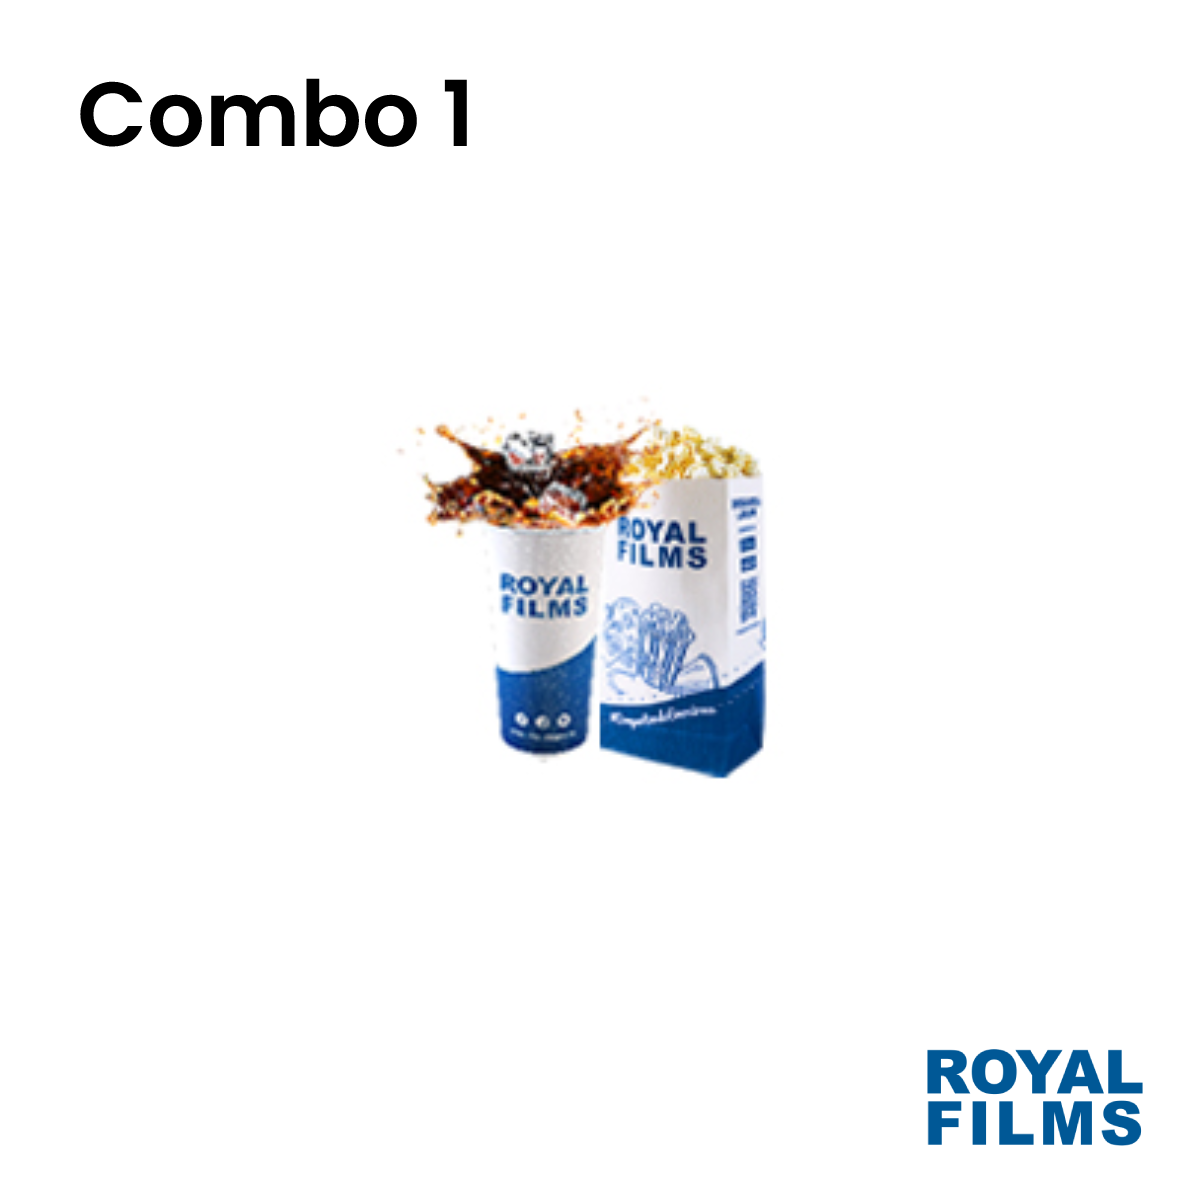 Bono Combo 1 (Crispetas + Gaseosa) - Royal Films